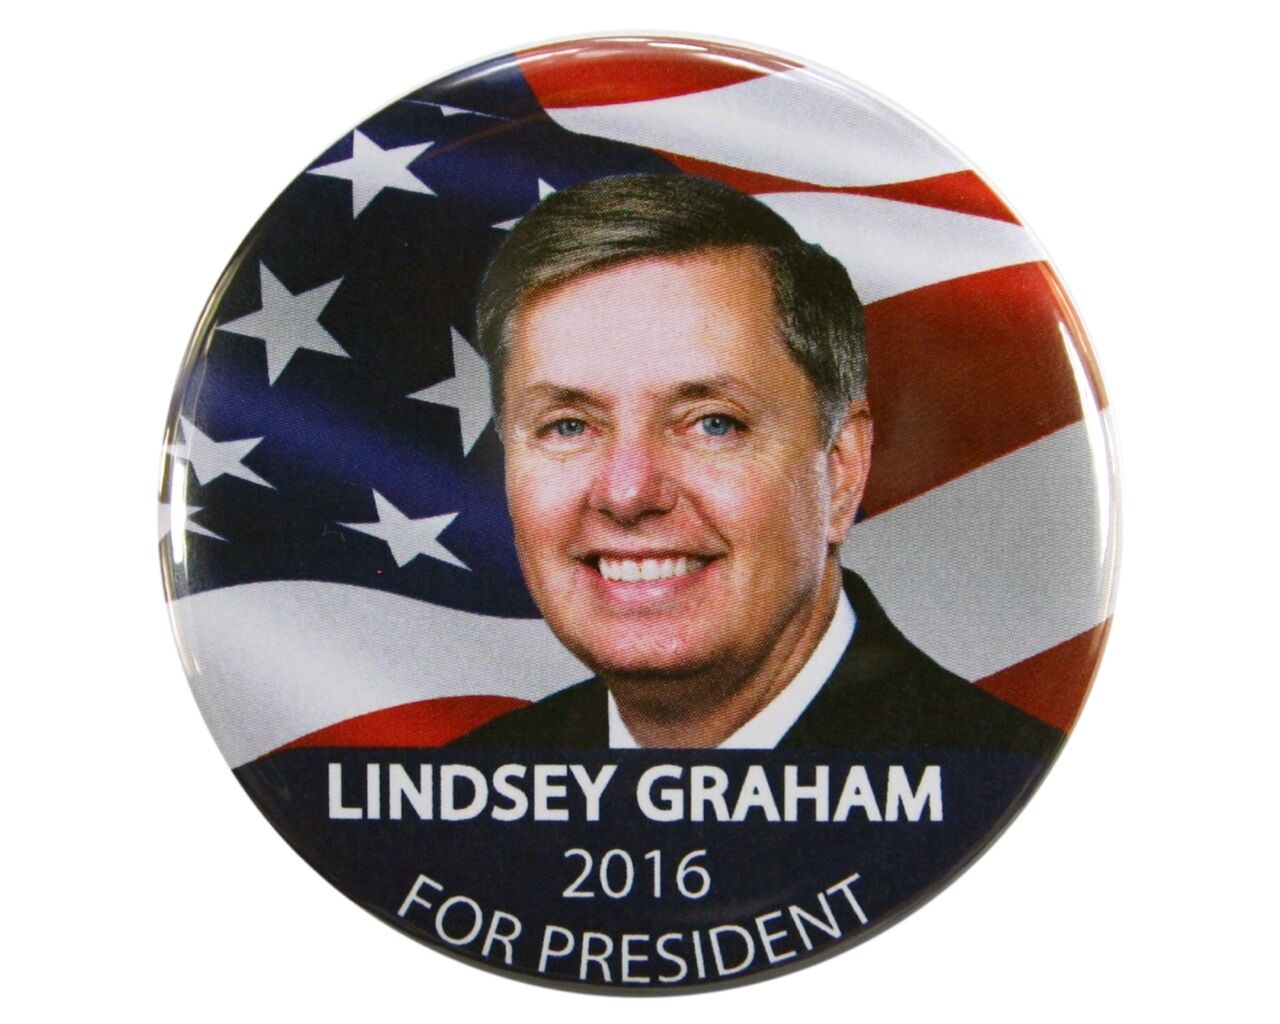 2016 LINDSEY GRAHAM for PRESIDENT 2.25